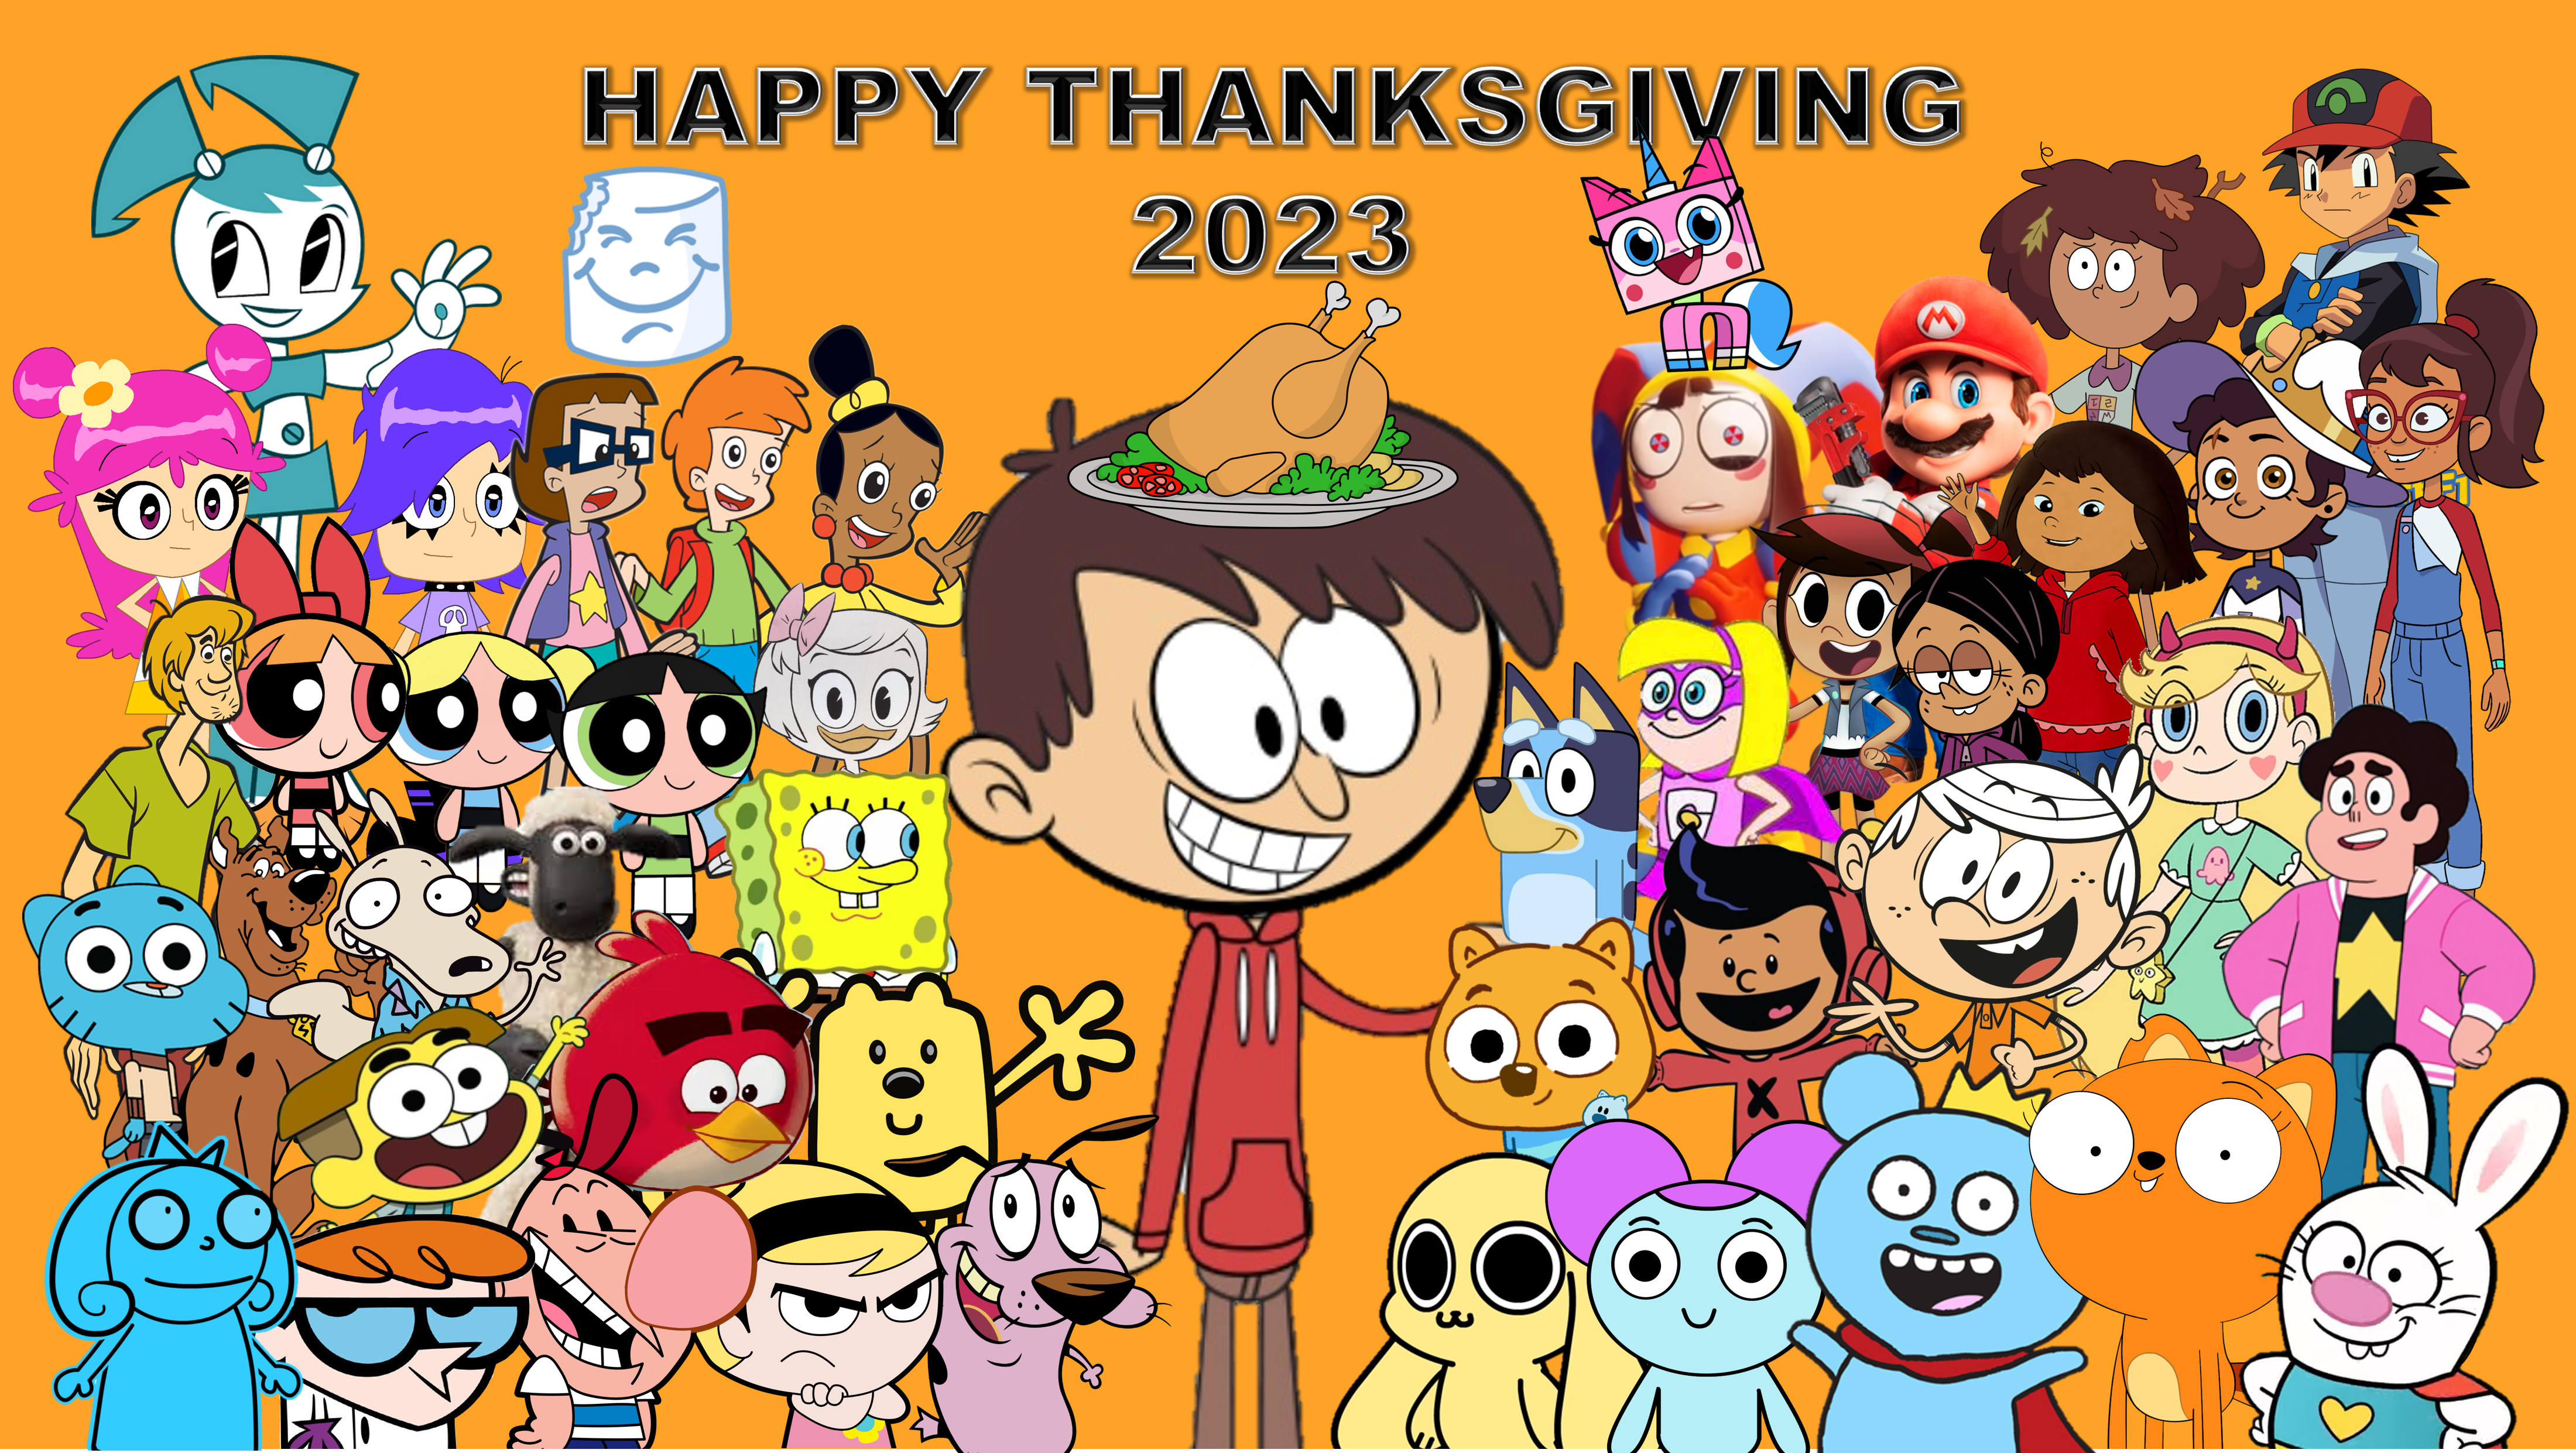 Happy Thanksgiving 2023 by MJWatt1998 on DeviantArt